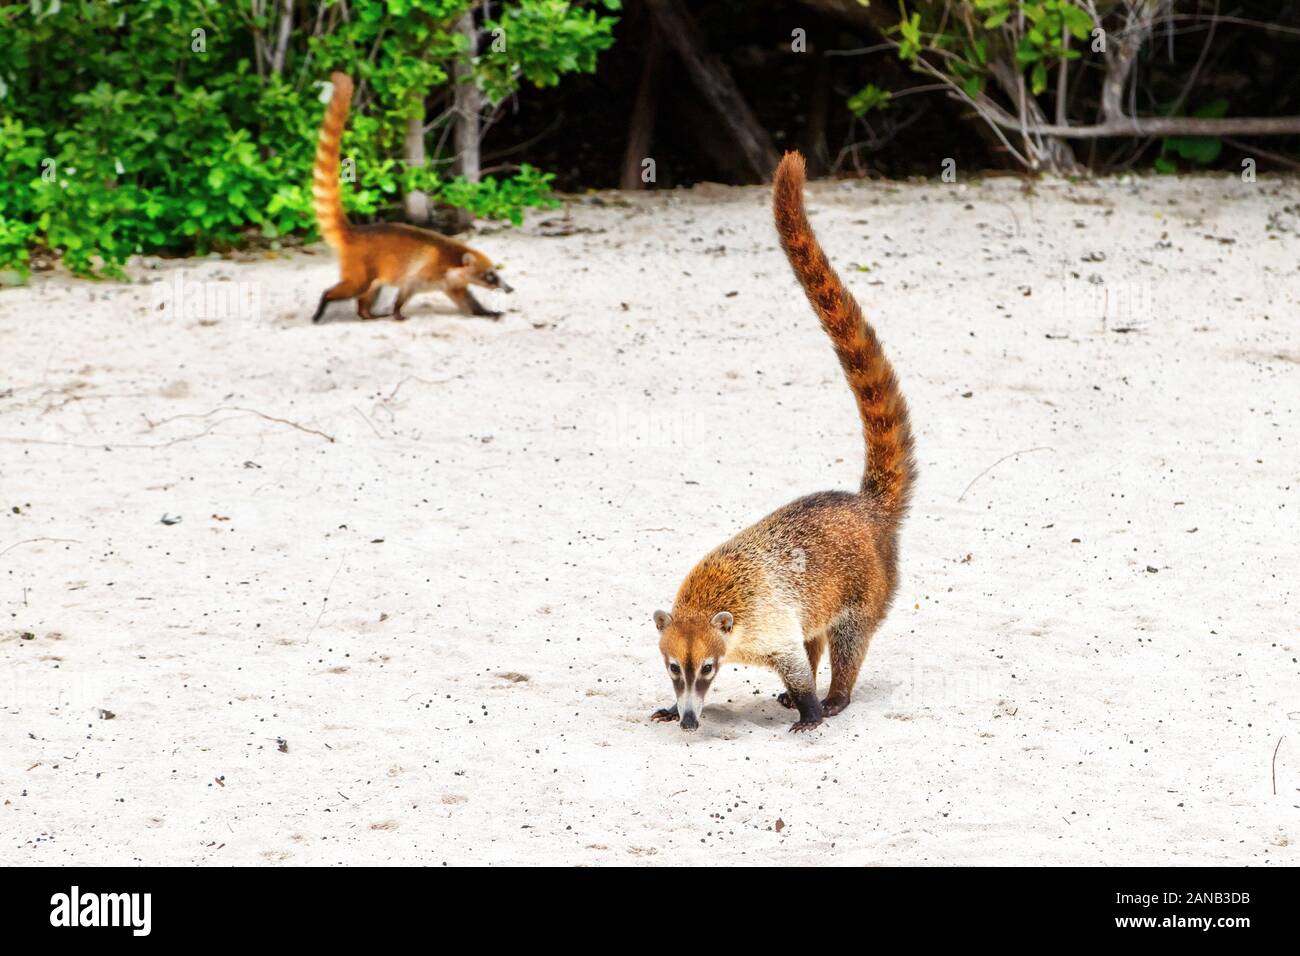 Les Coatis ou Coatimundis serpentant sur les plages de Cancun, au Mexique. Surnommé hog-nosed les ratons laveurs à cause de leur museau bec long, ils sont memb Banque D'Images